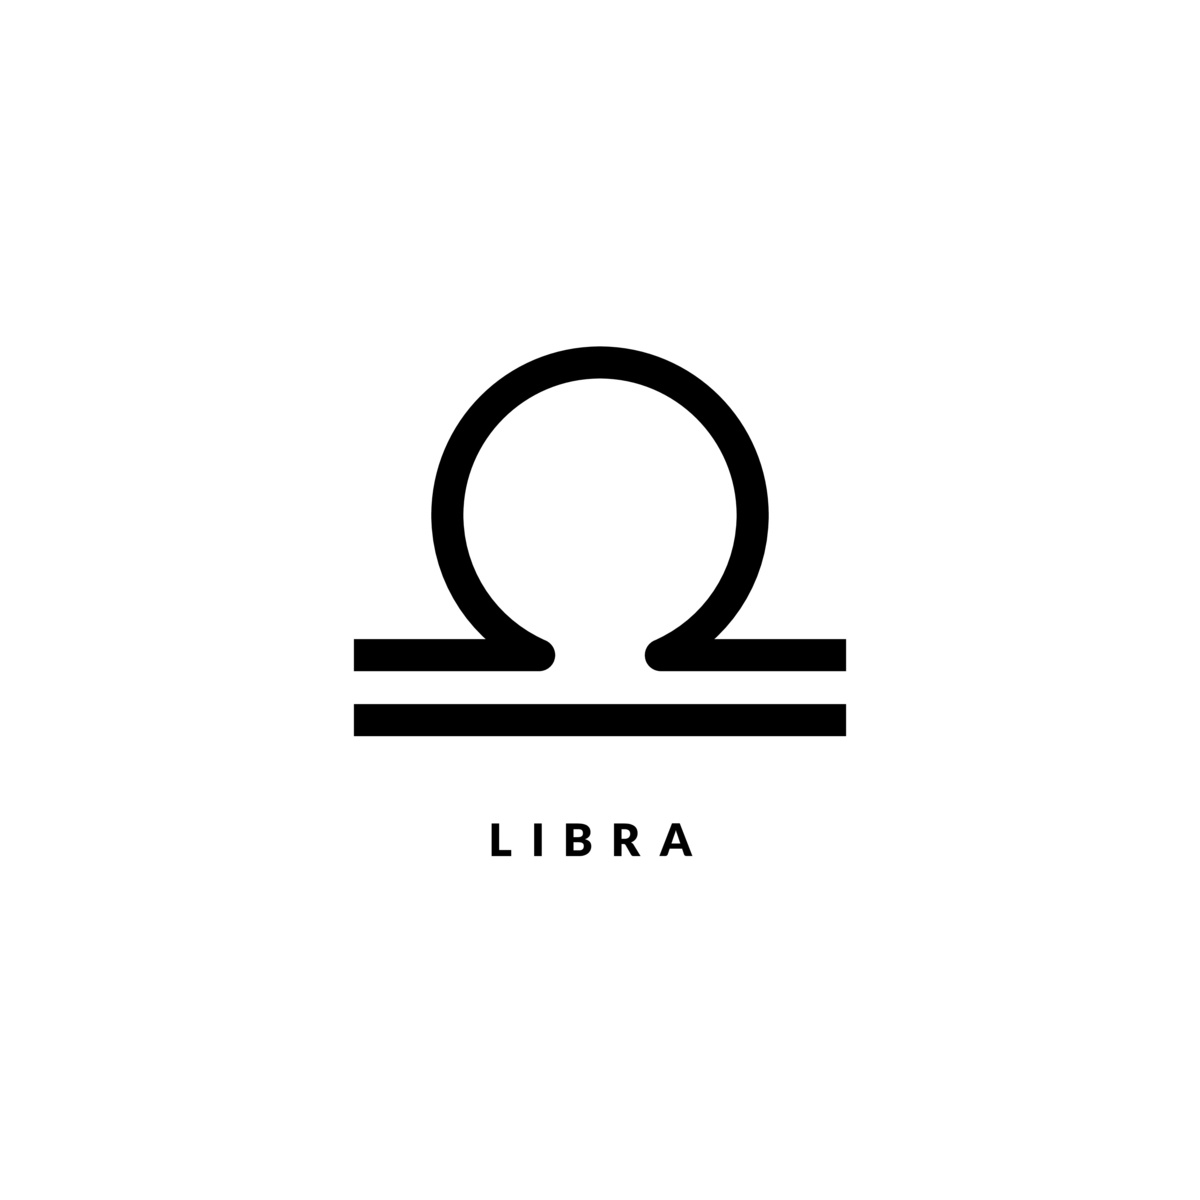 Símbolo do signo de Libra